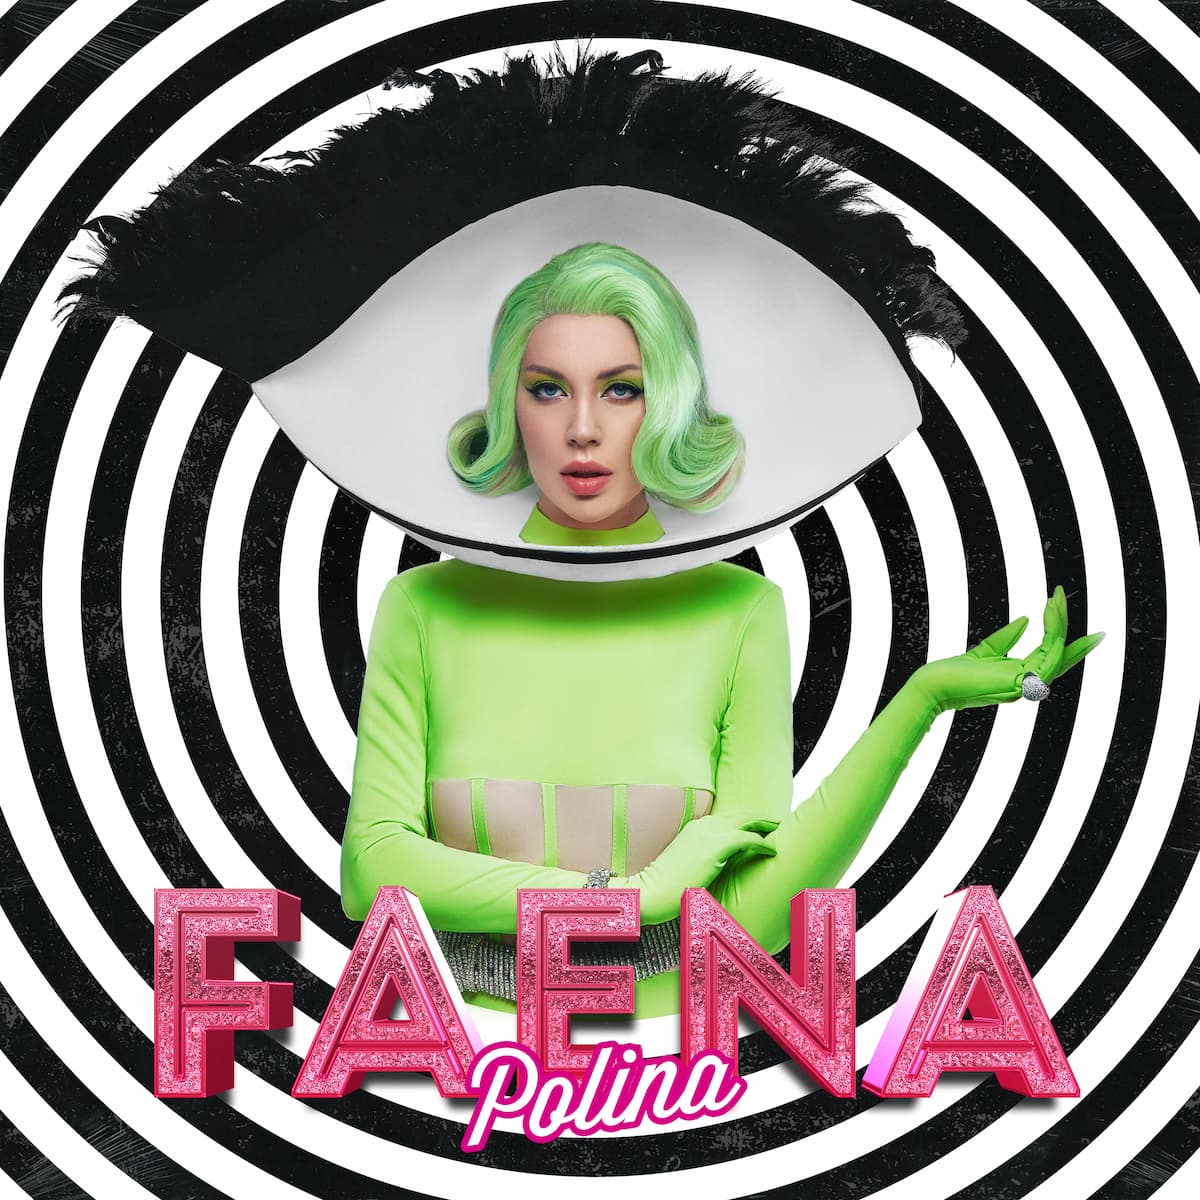 POLINA, vocalista de hits de Tiësto e Aoki, volta com tudo com novo single "Faena"